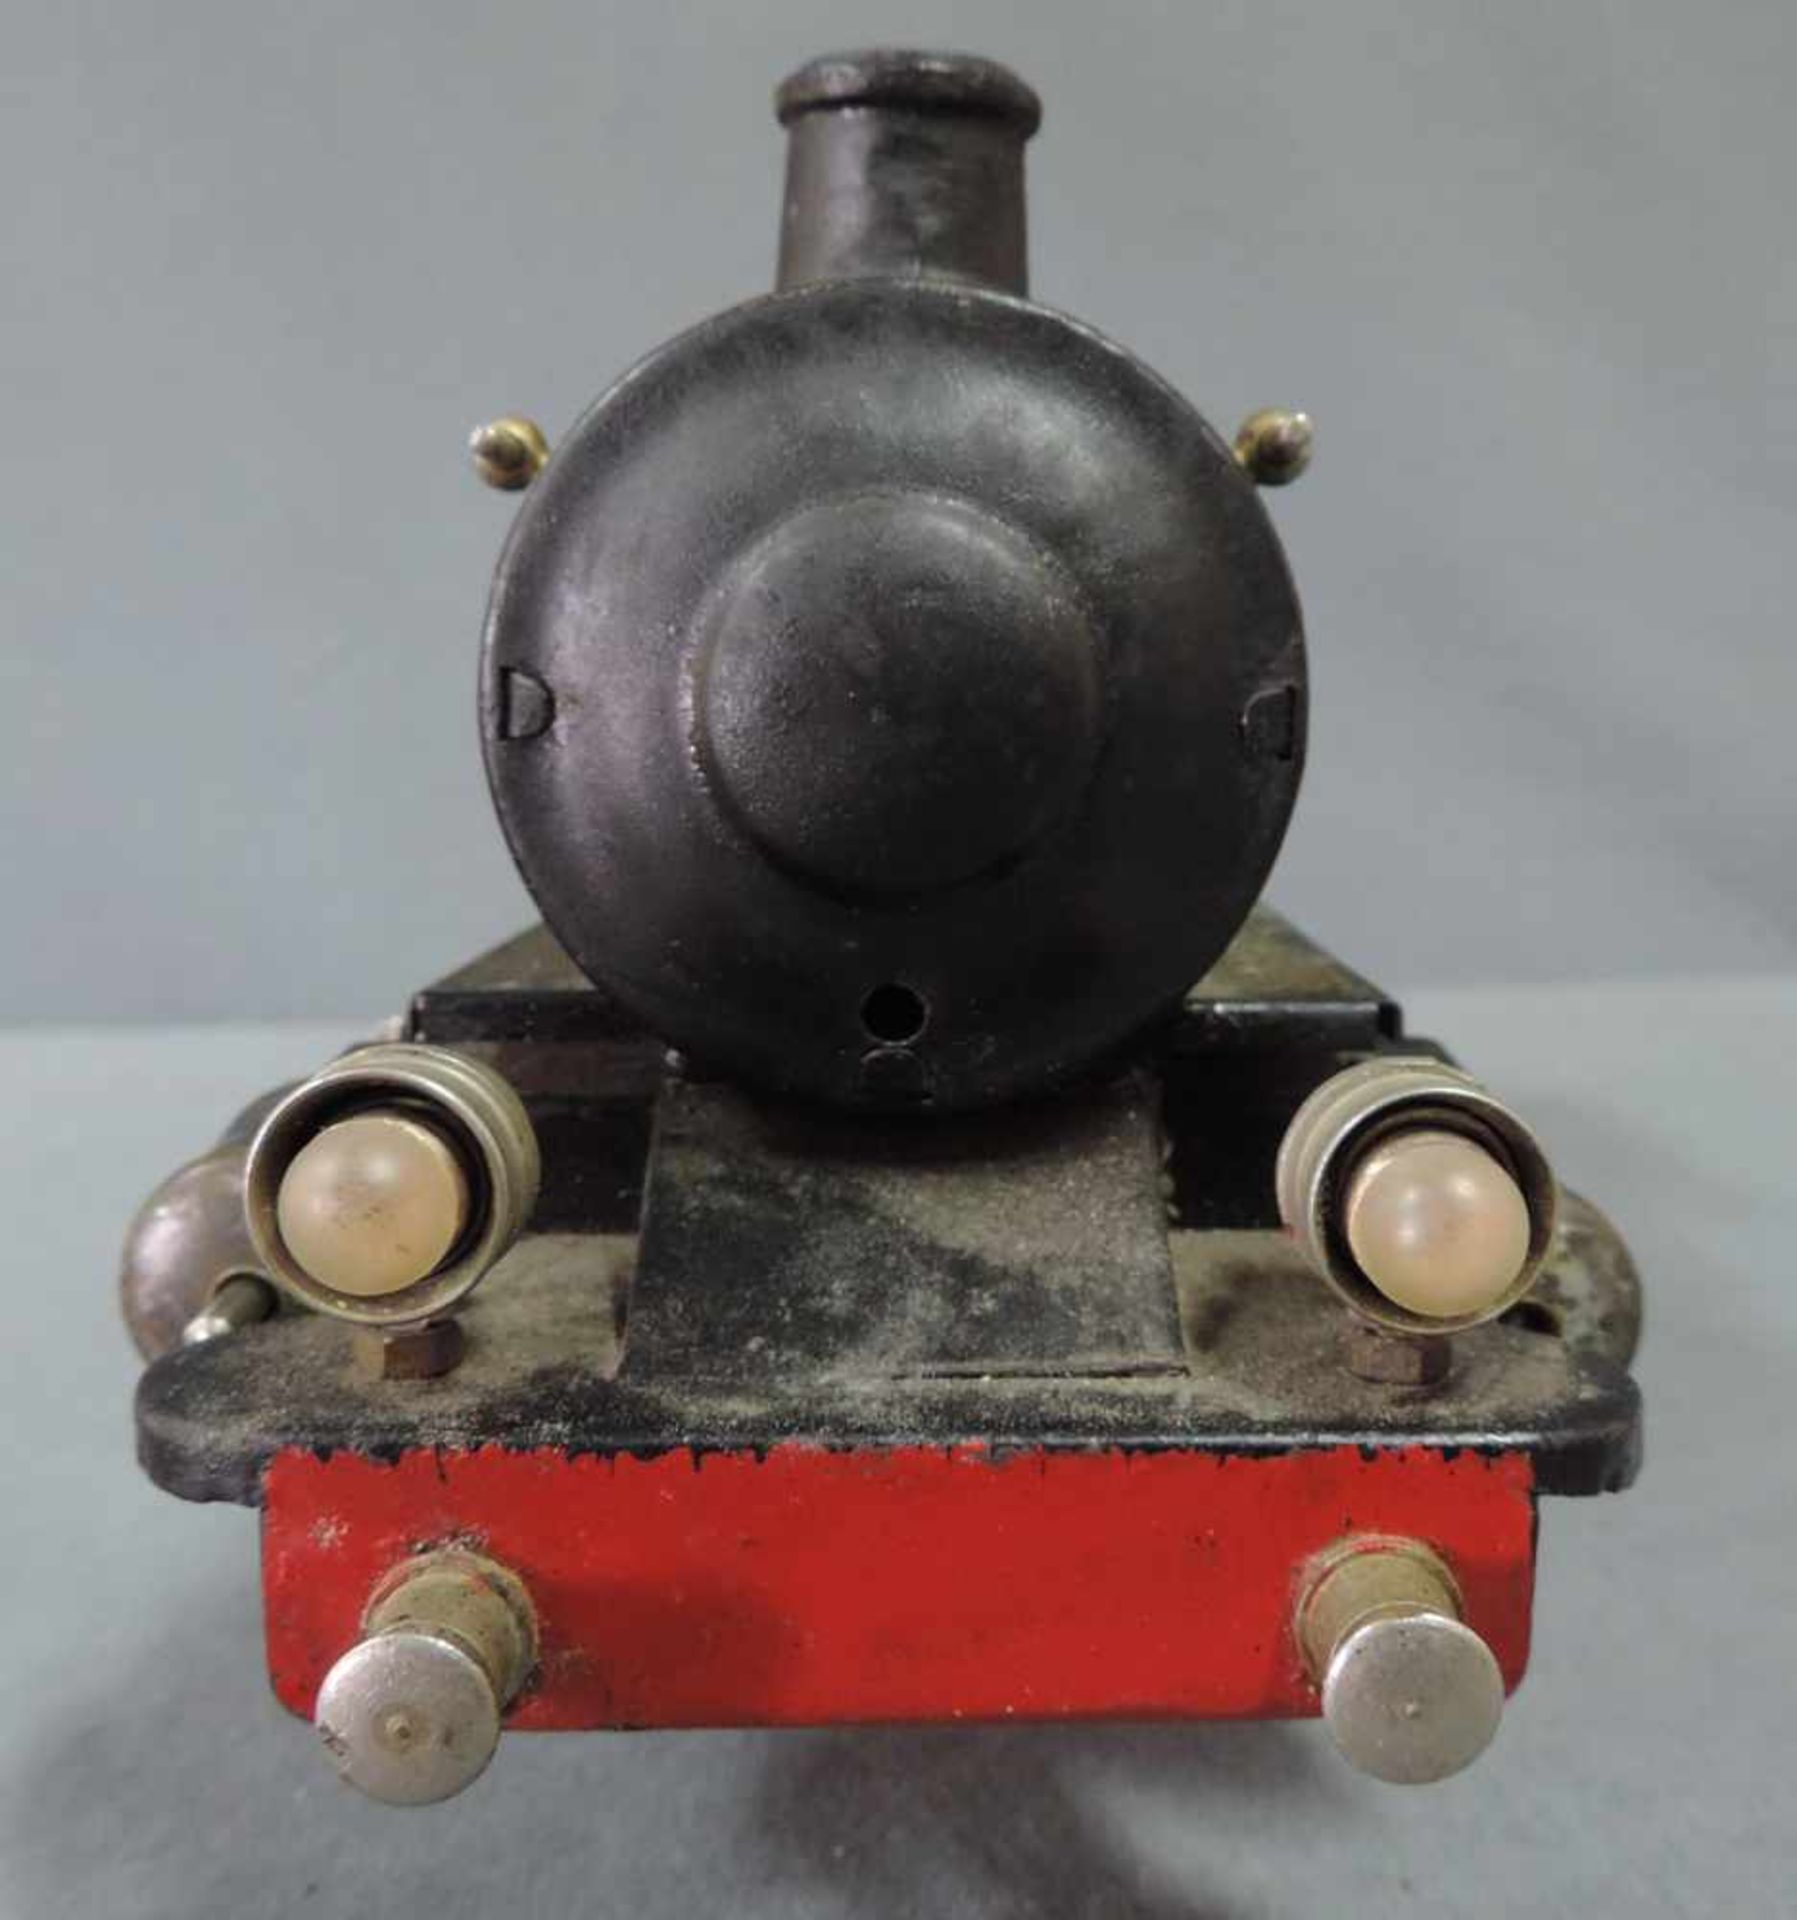 Modell Lokomotive. Märklin. "R 13041" Spur 1 27 cm x 10 cm. Modell Dampflock "R 13041" von Märklin - Bild 2 aus 8